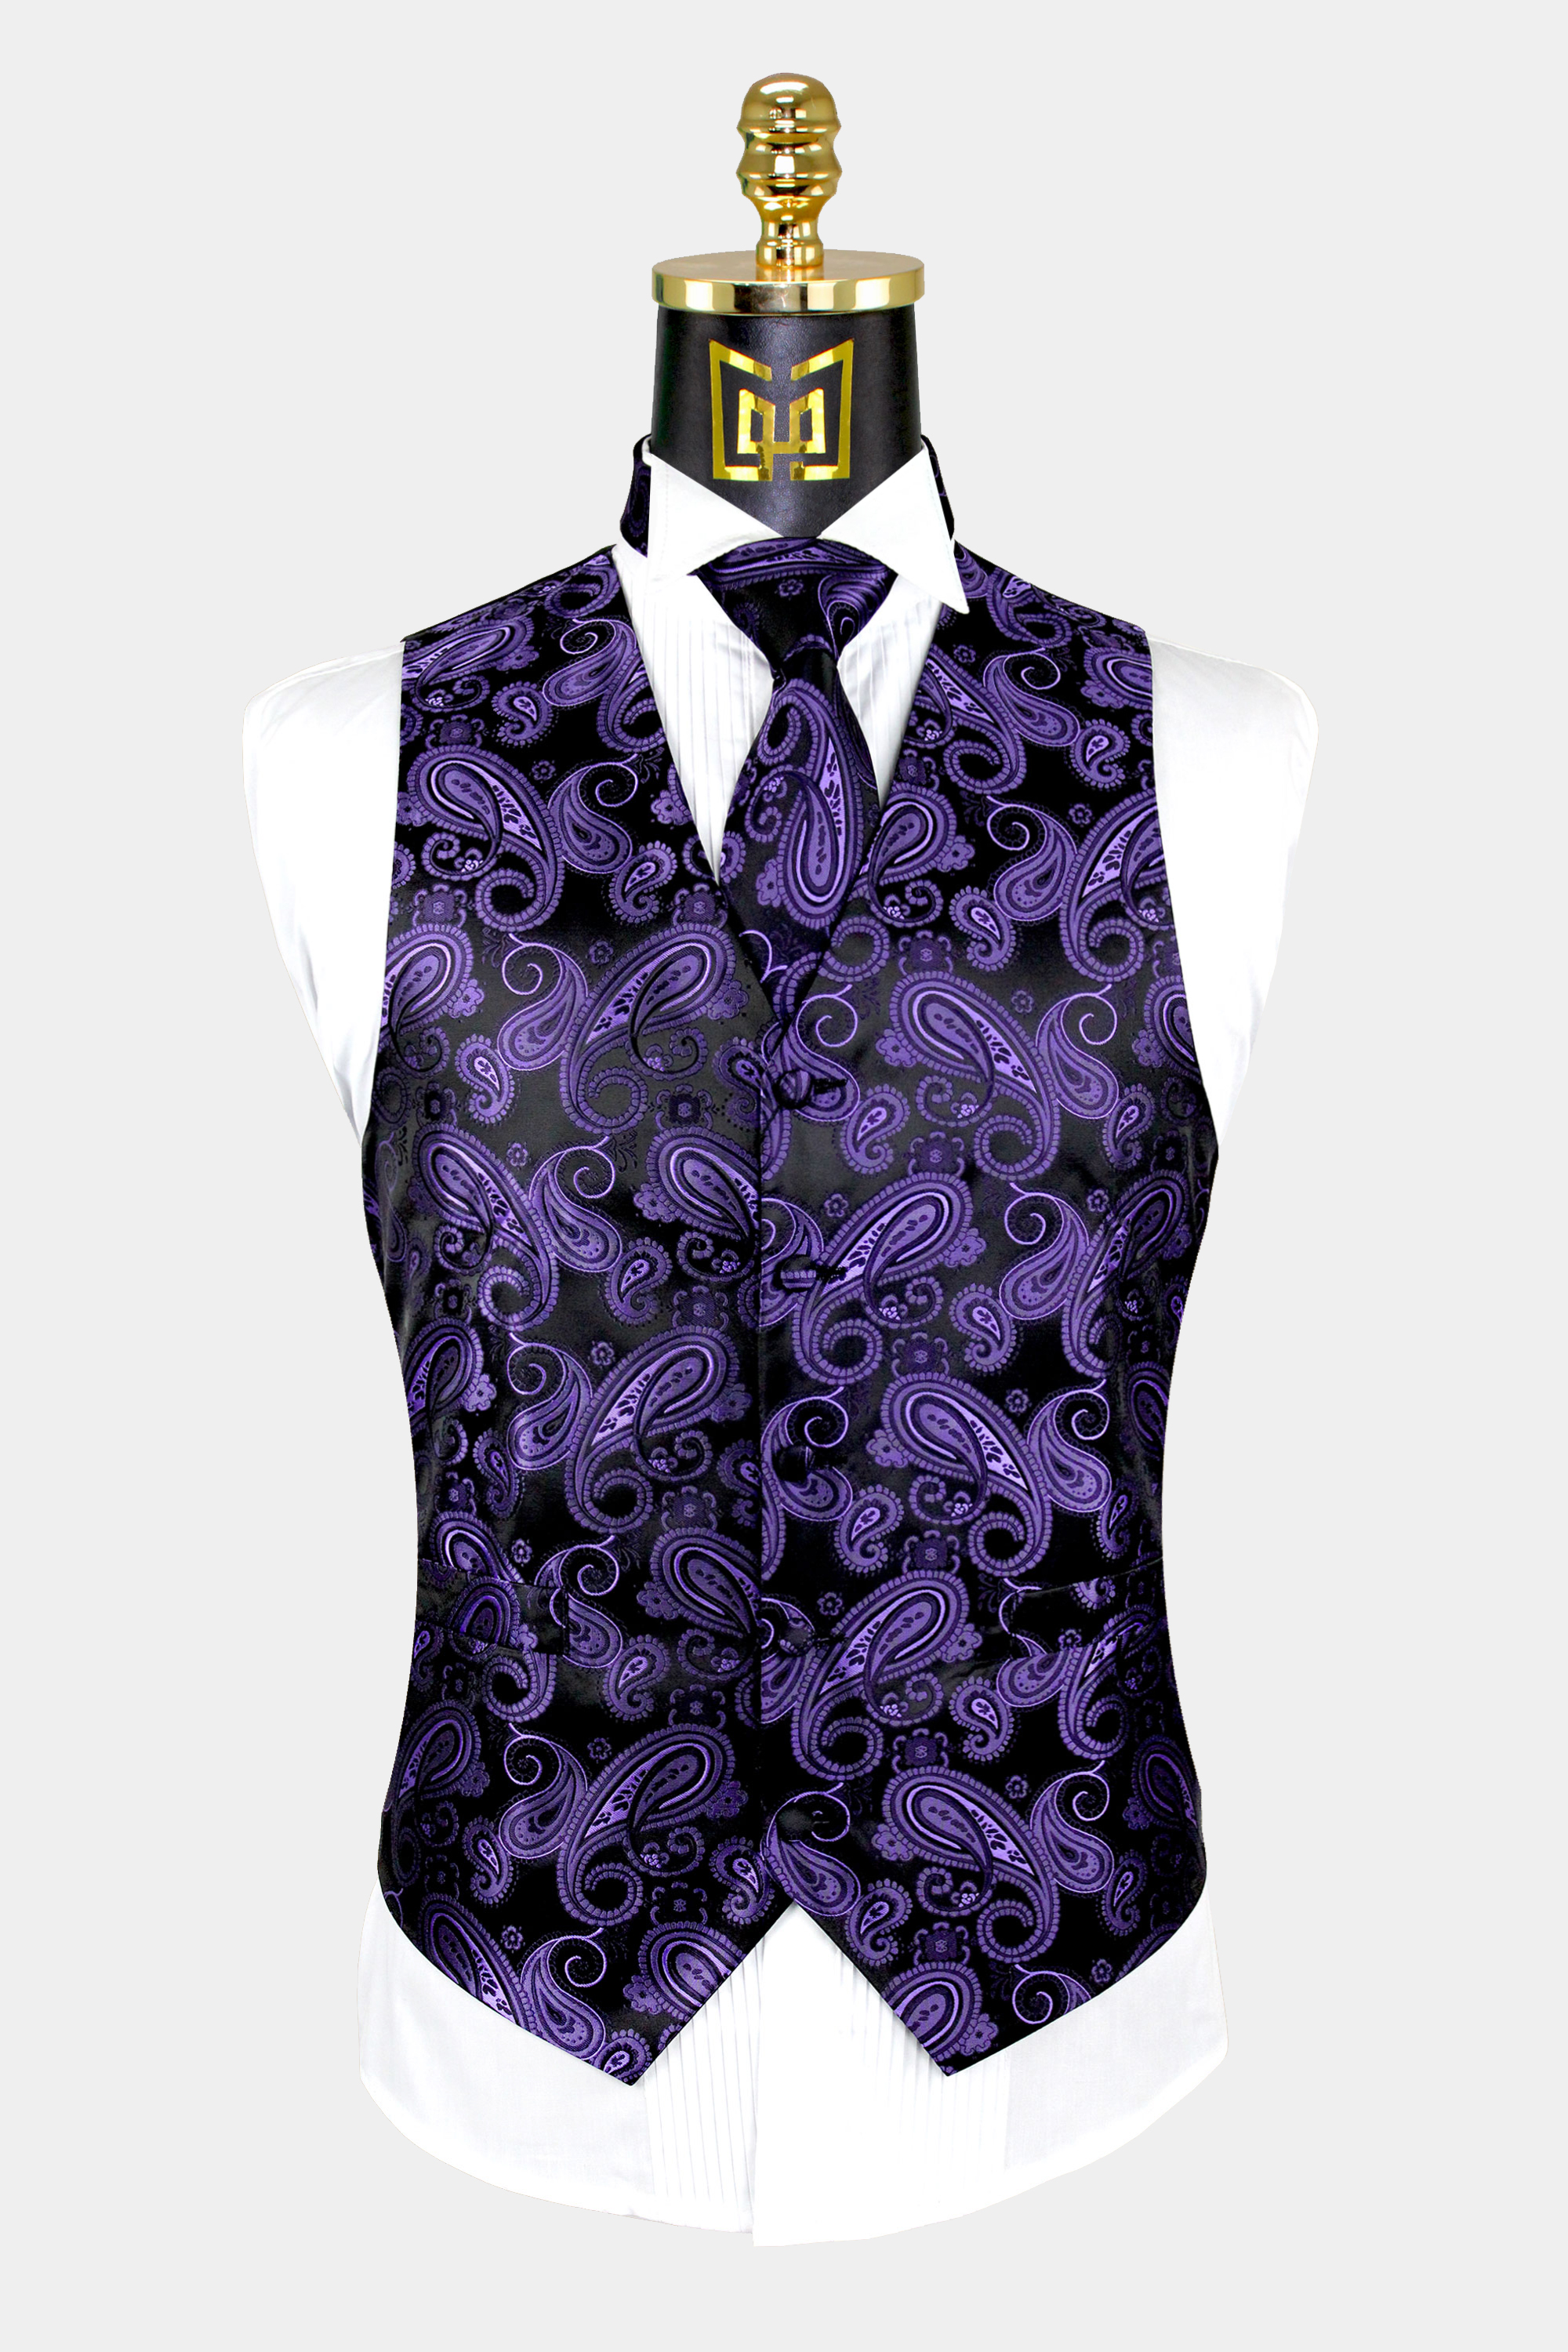 New Men's purple formal vest Tuxedo Waistcoat_necktie & bowtie set wedding 